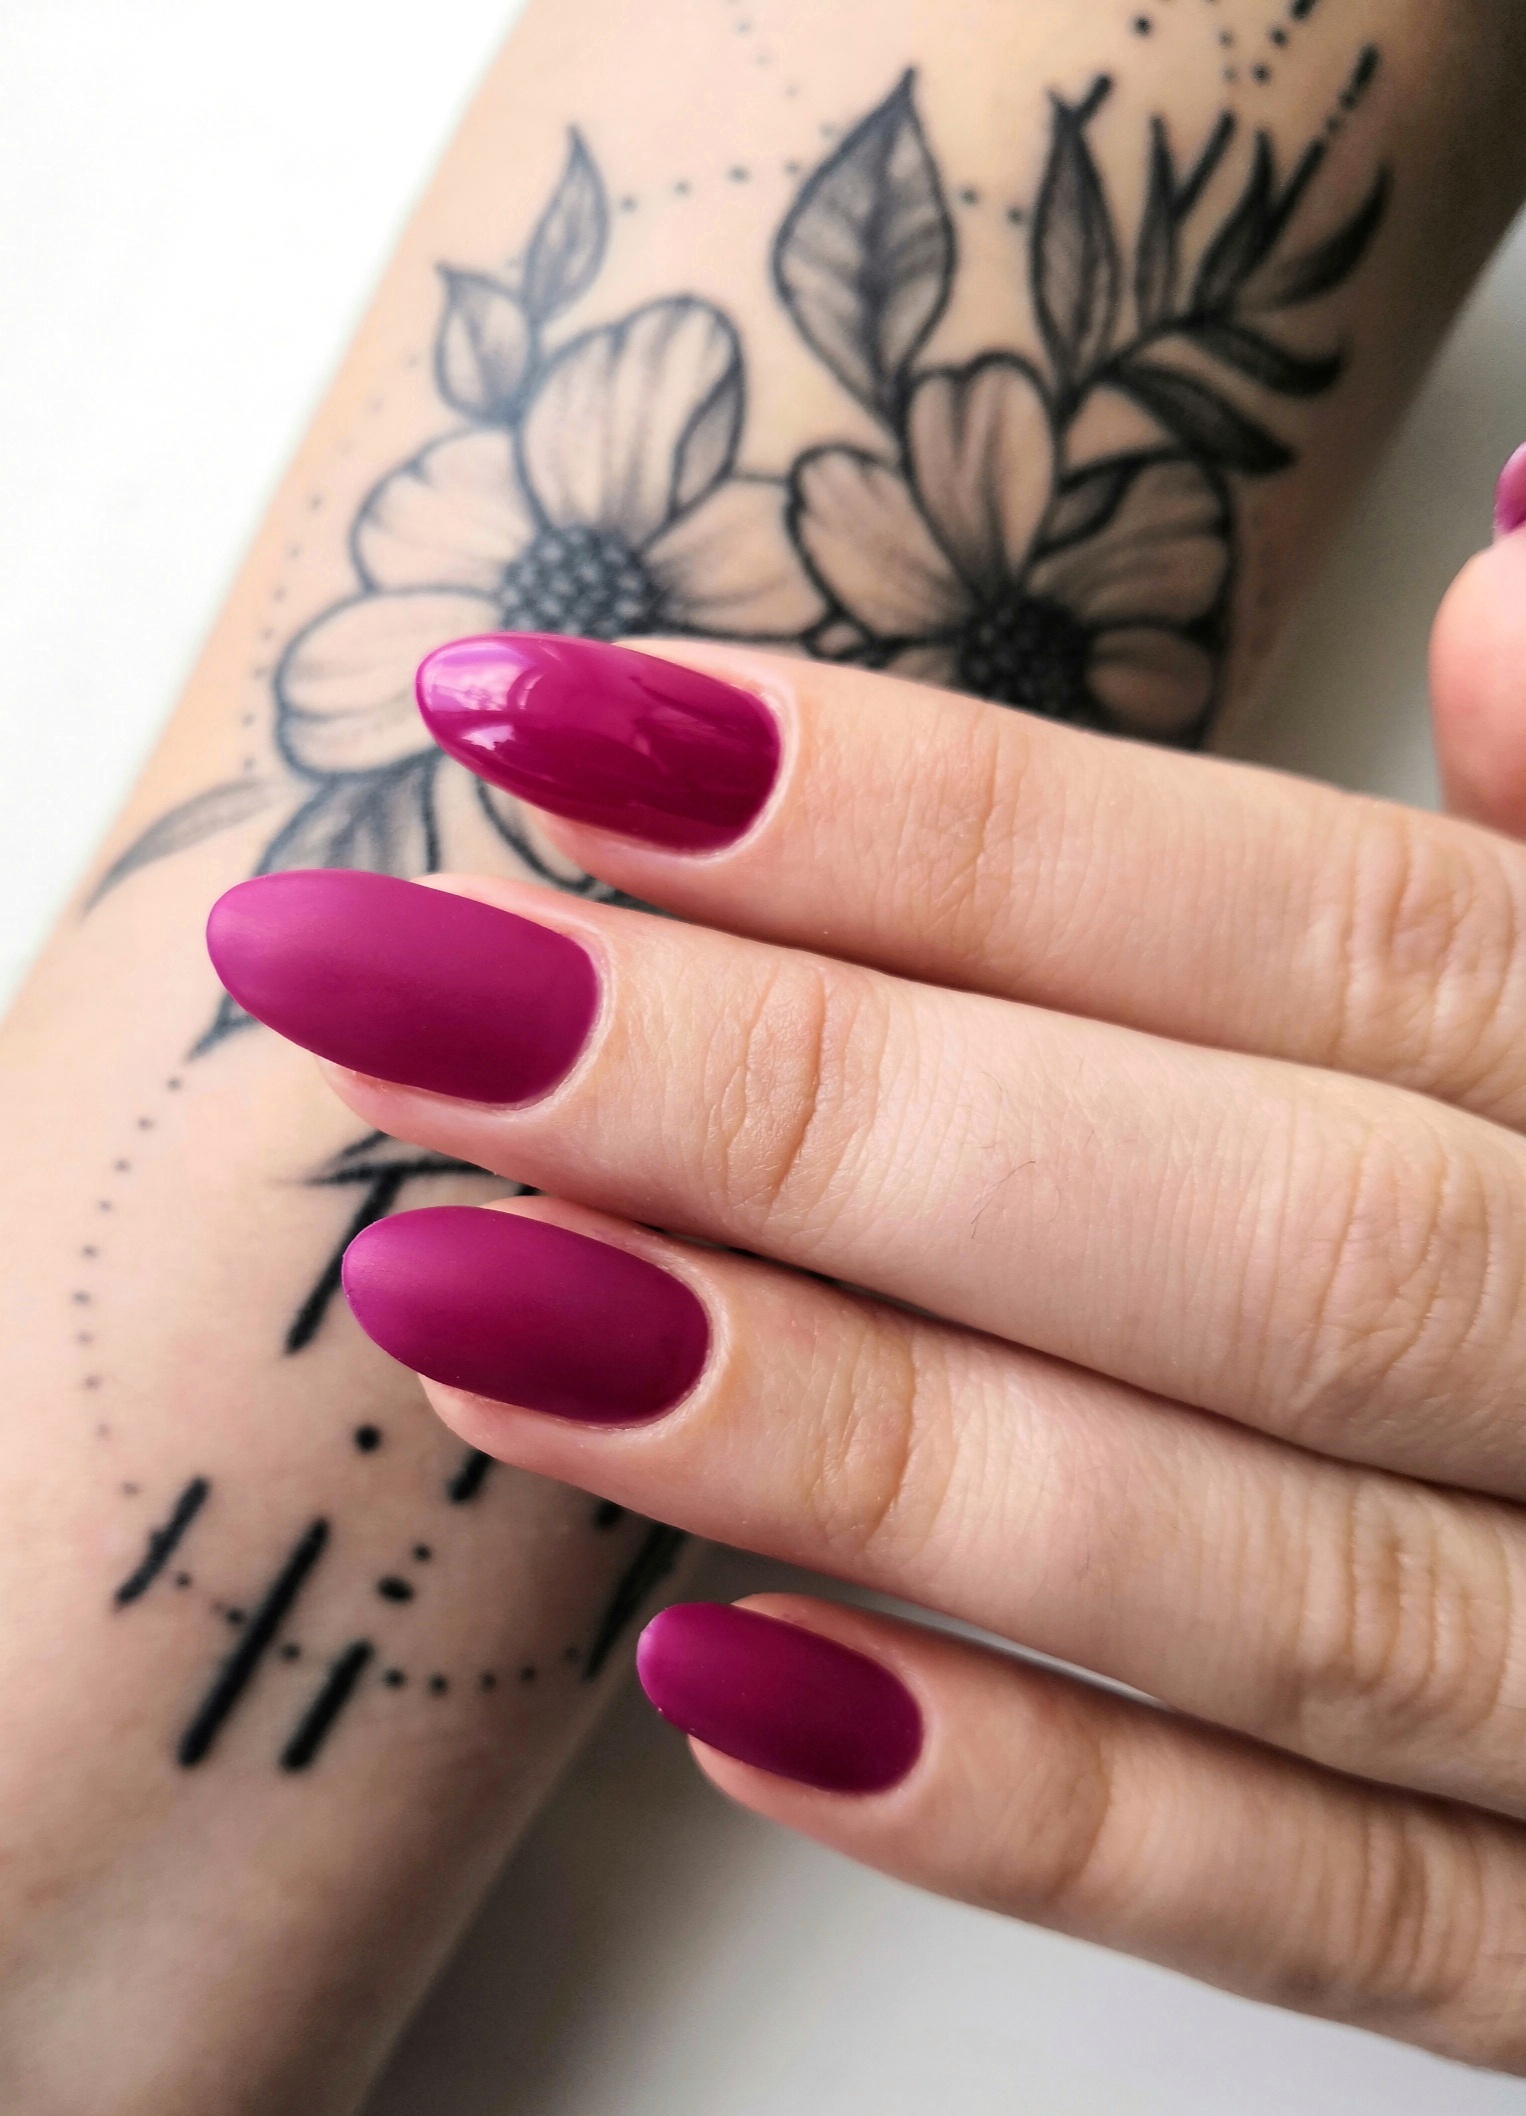 Матовый маникюр в баклажановом цвете на длинные ногти.